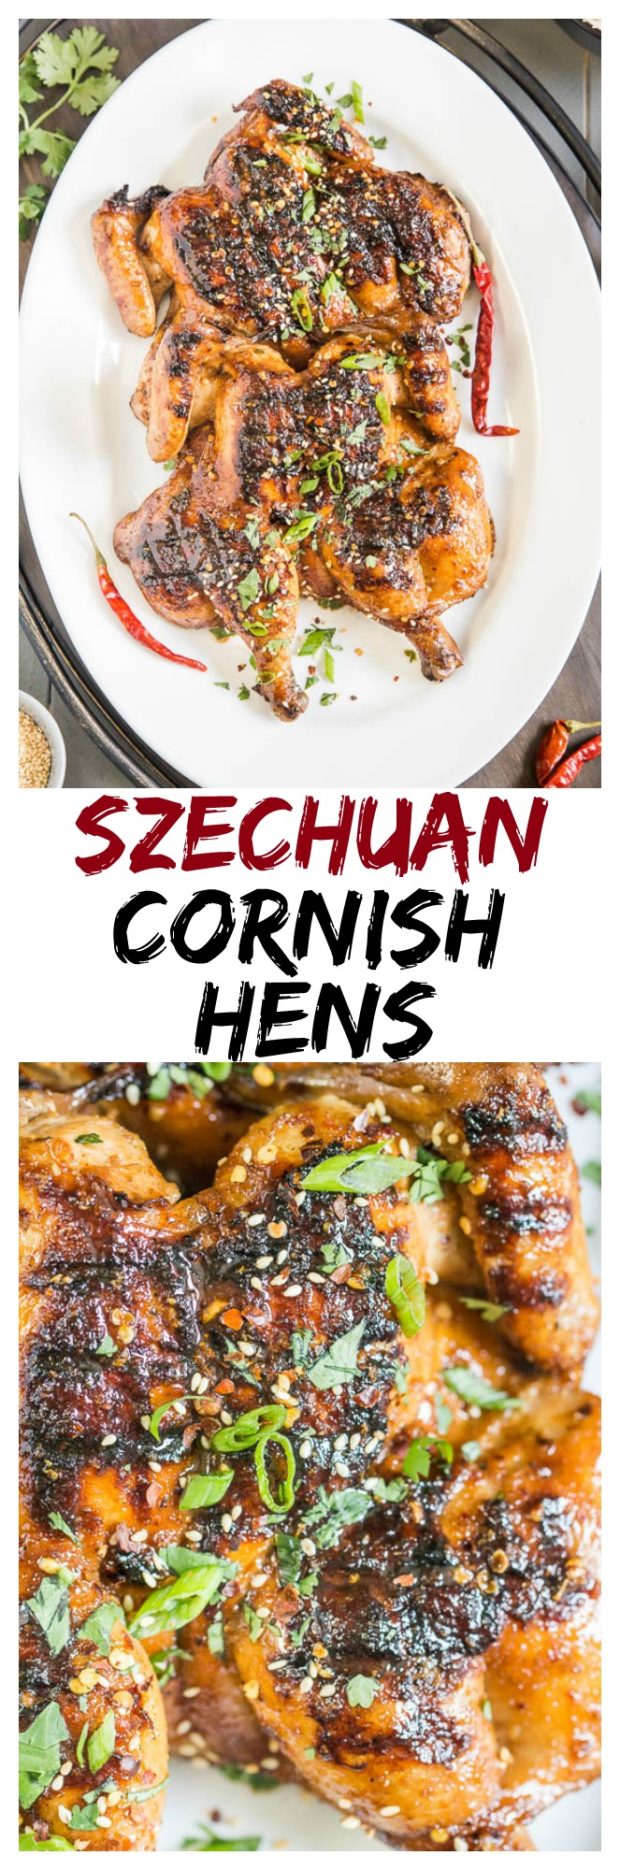 Szechuan Cornish Hens